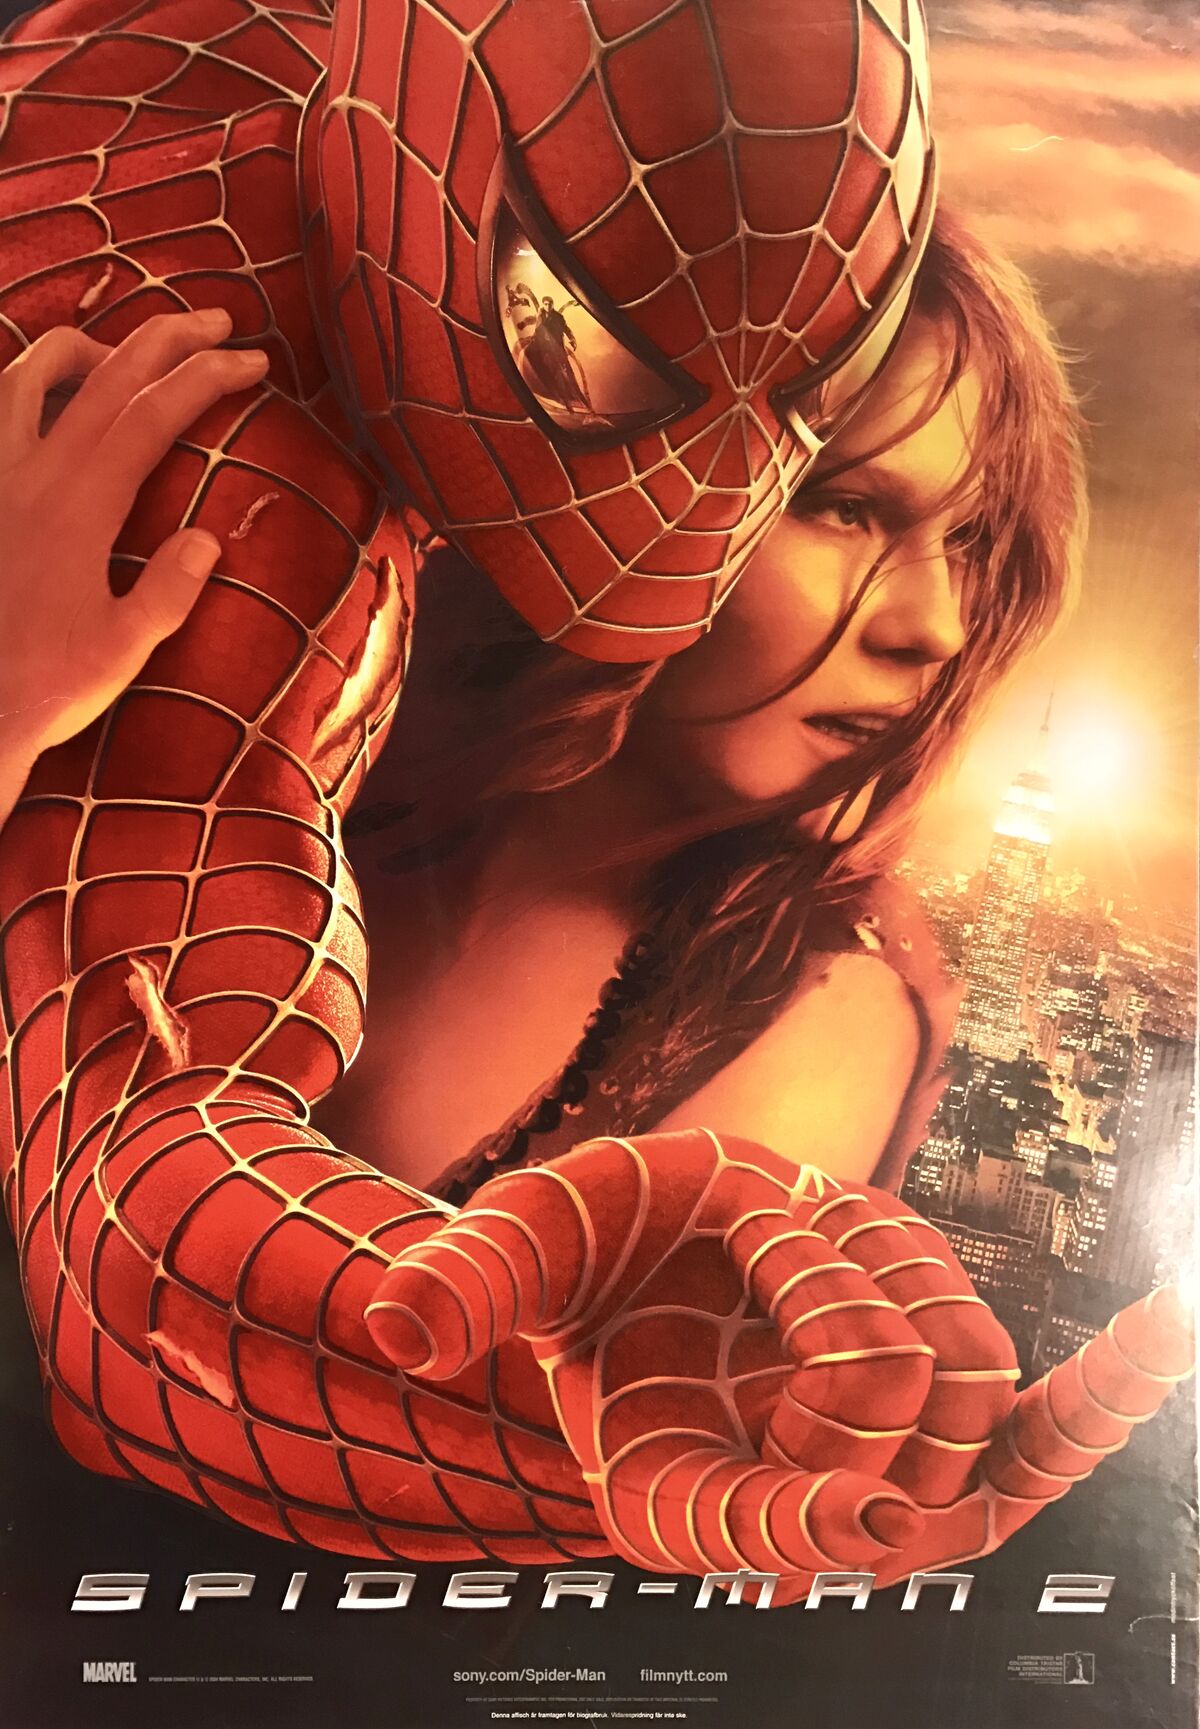 Spider-Man 2 | Sony Pictures Entertaiment Wiki | Fandom